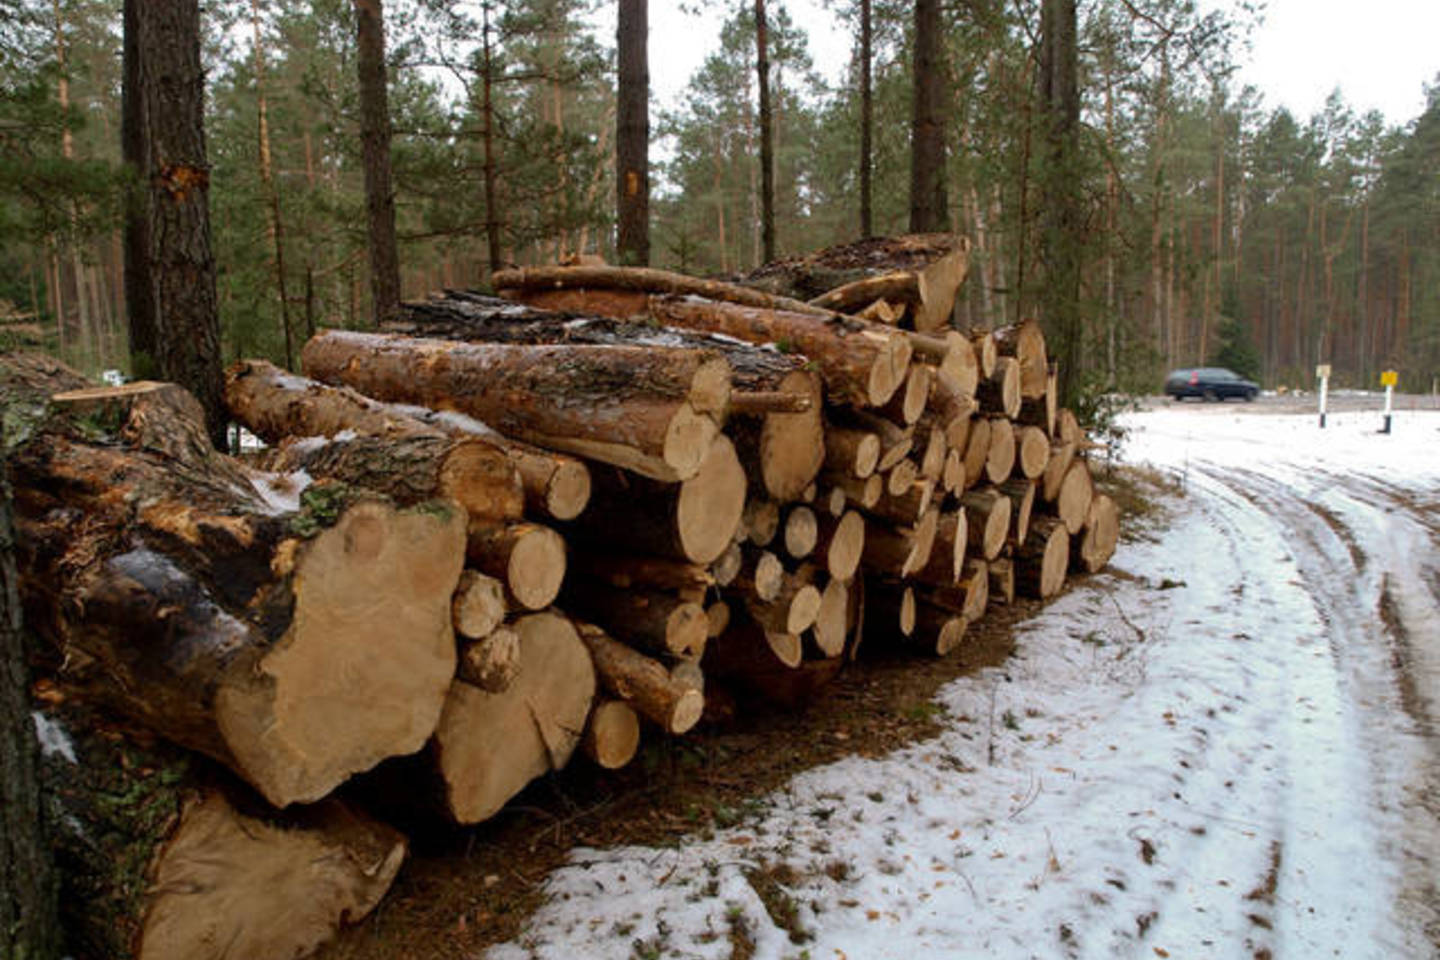  Lazdijų rajone svetimame miške pasidarbavo vagys - išpjovė dalį pušų.<br> V.Ščiavinsko asociatyvioji nuotr.